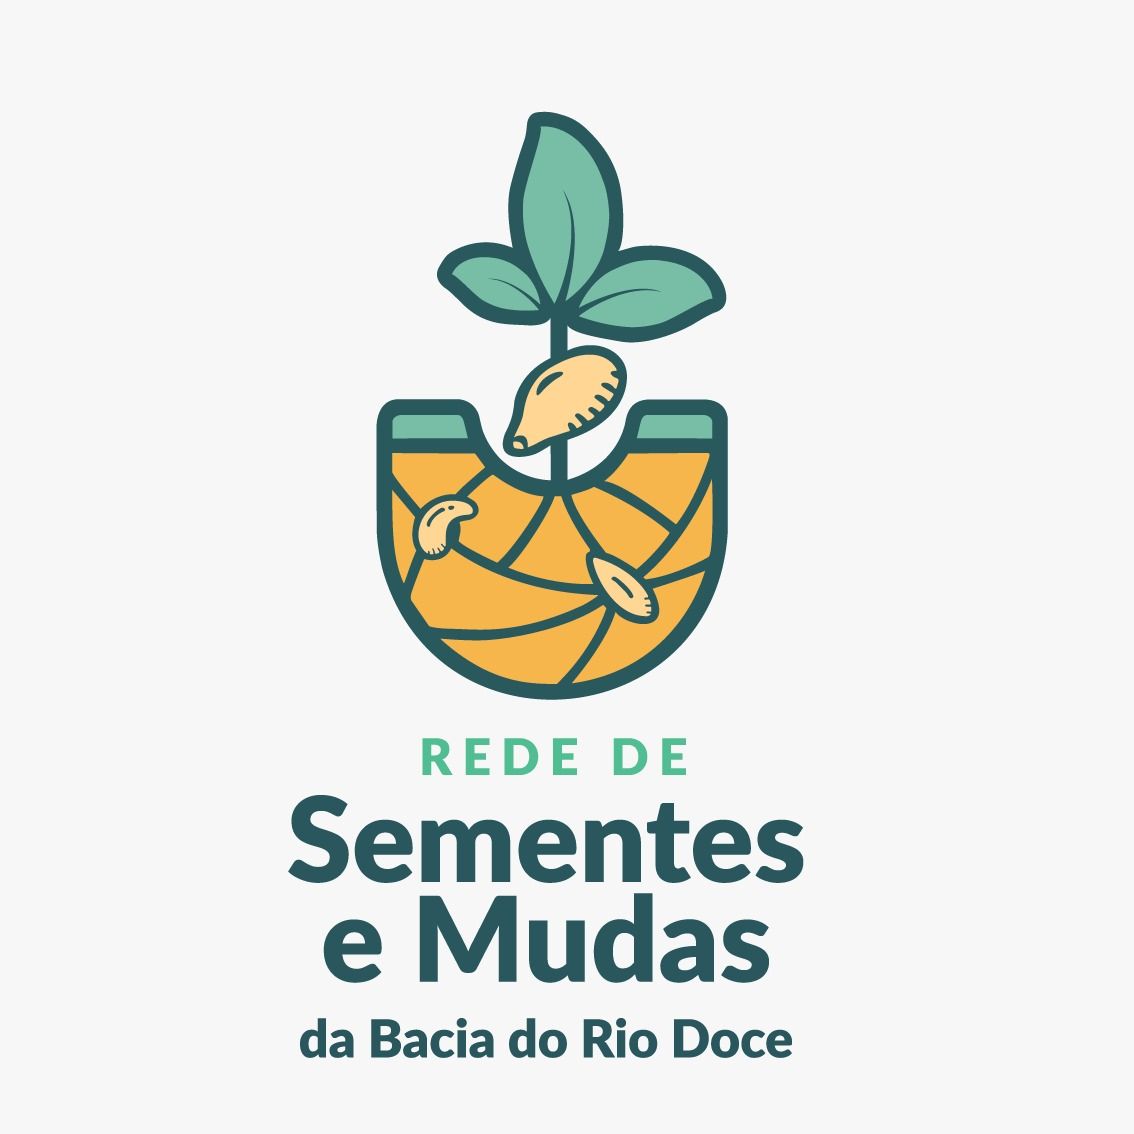 Rede de Sementes e Mudas do Rio Doce